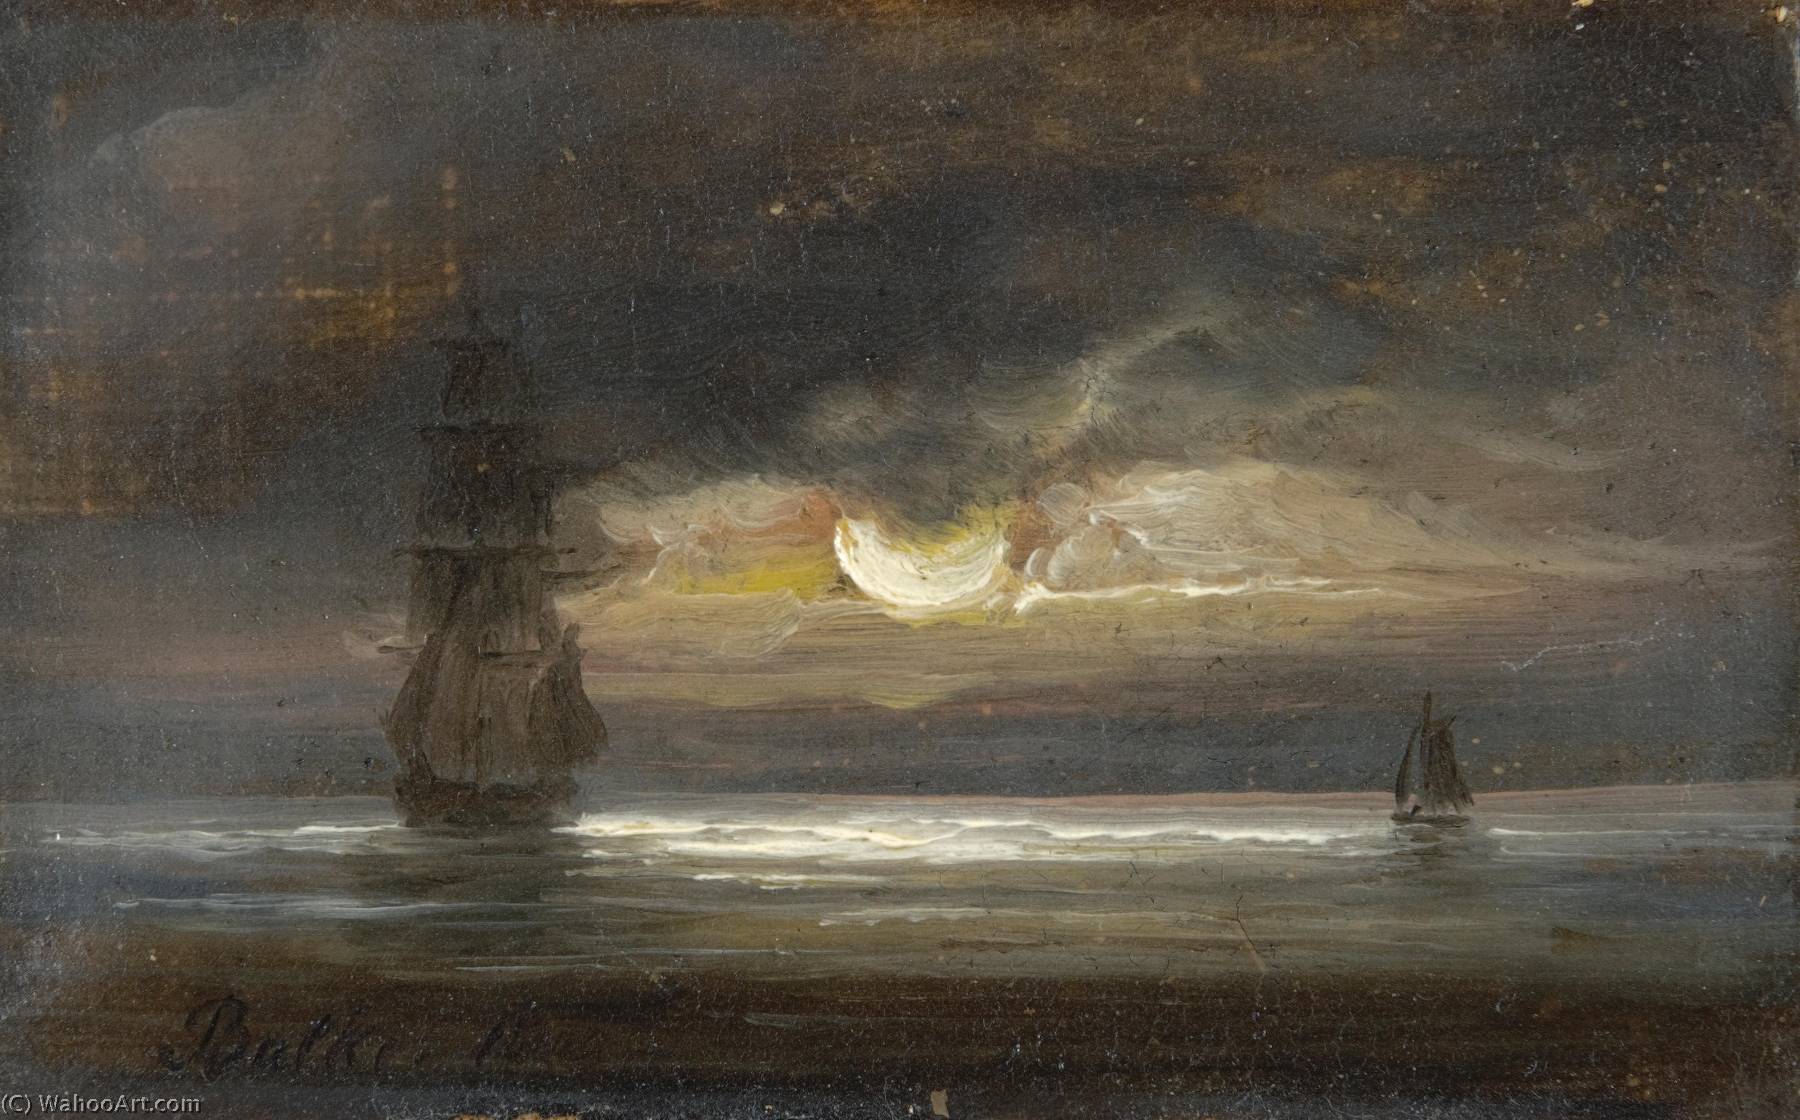 WikiOO.org - אנציקלופדיה לאמנויות יפות - ציור, יצירות אמנות Peder Balke - Two Sailing boats by moonlight